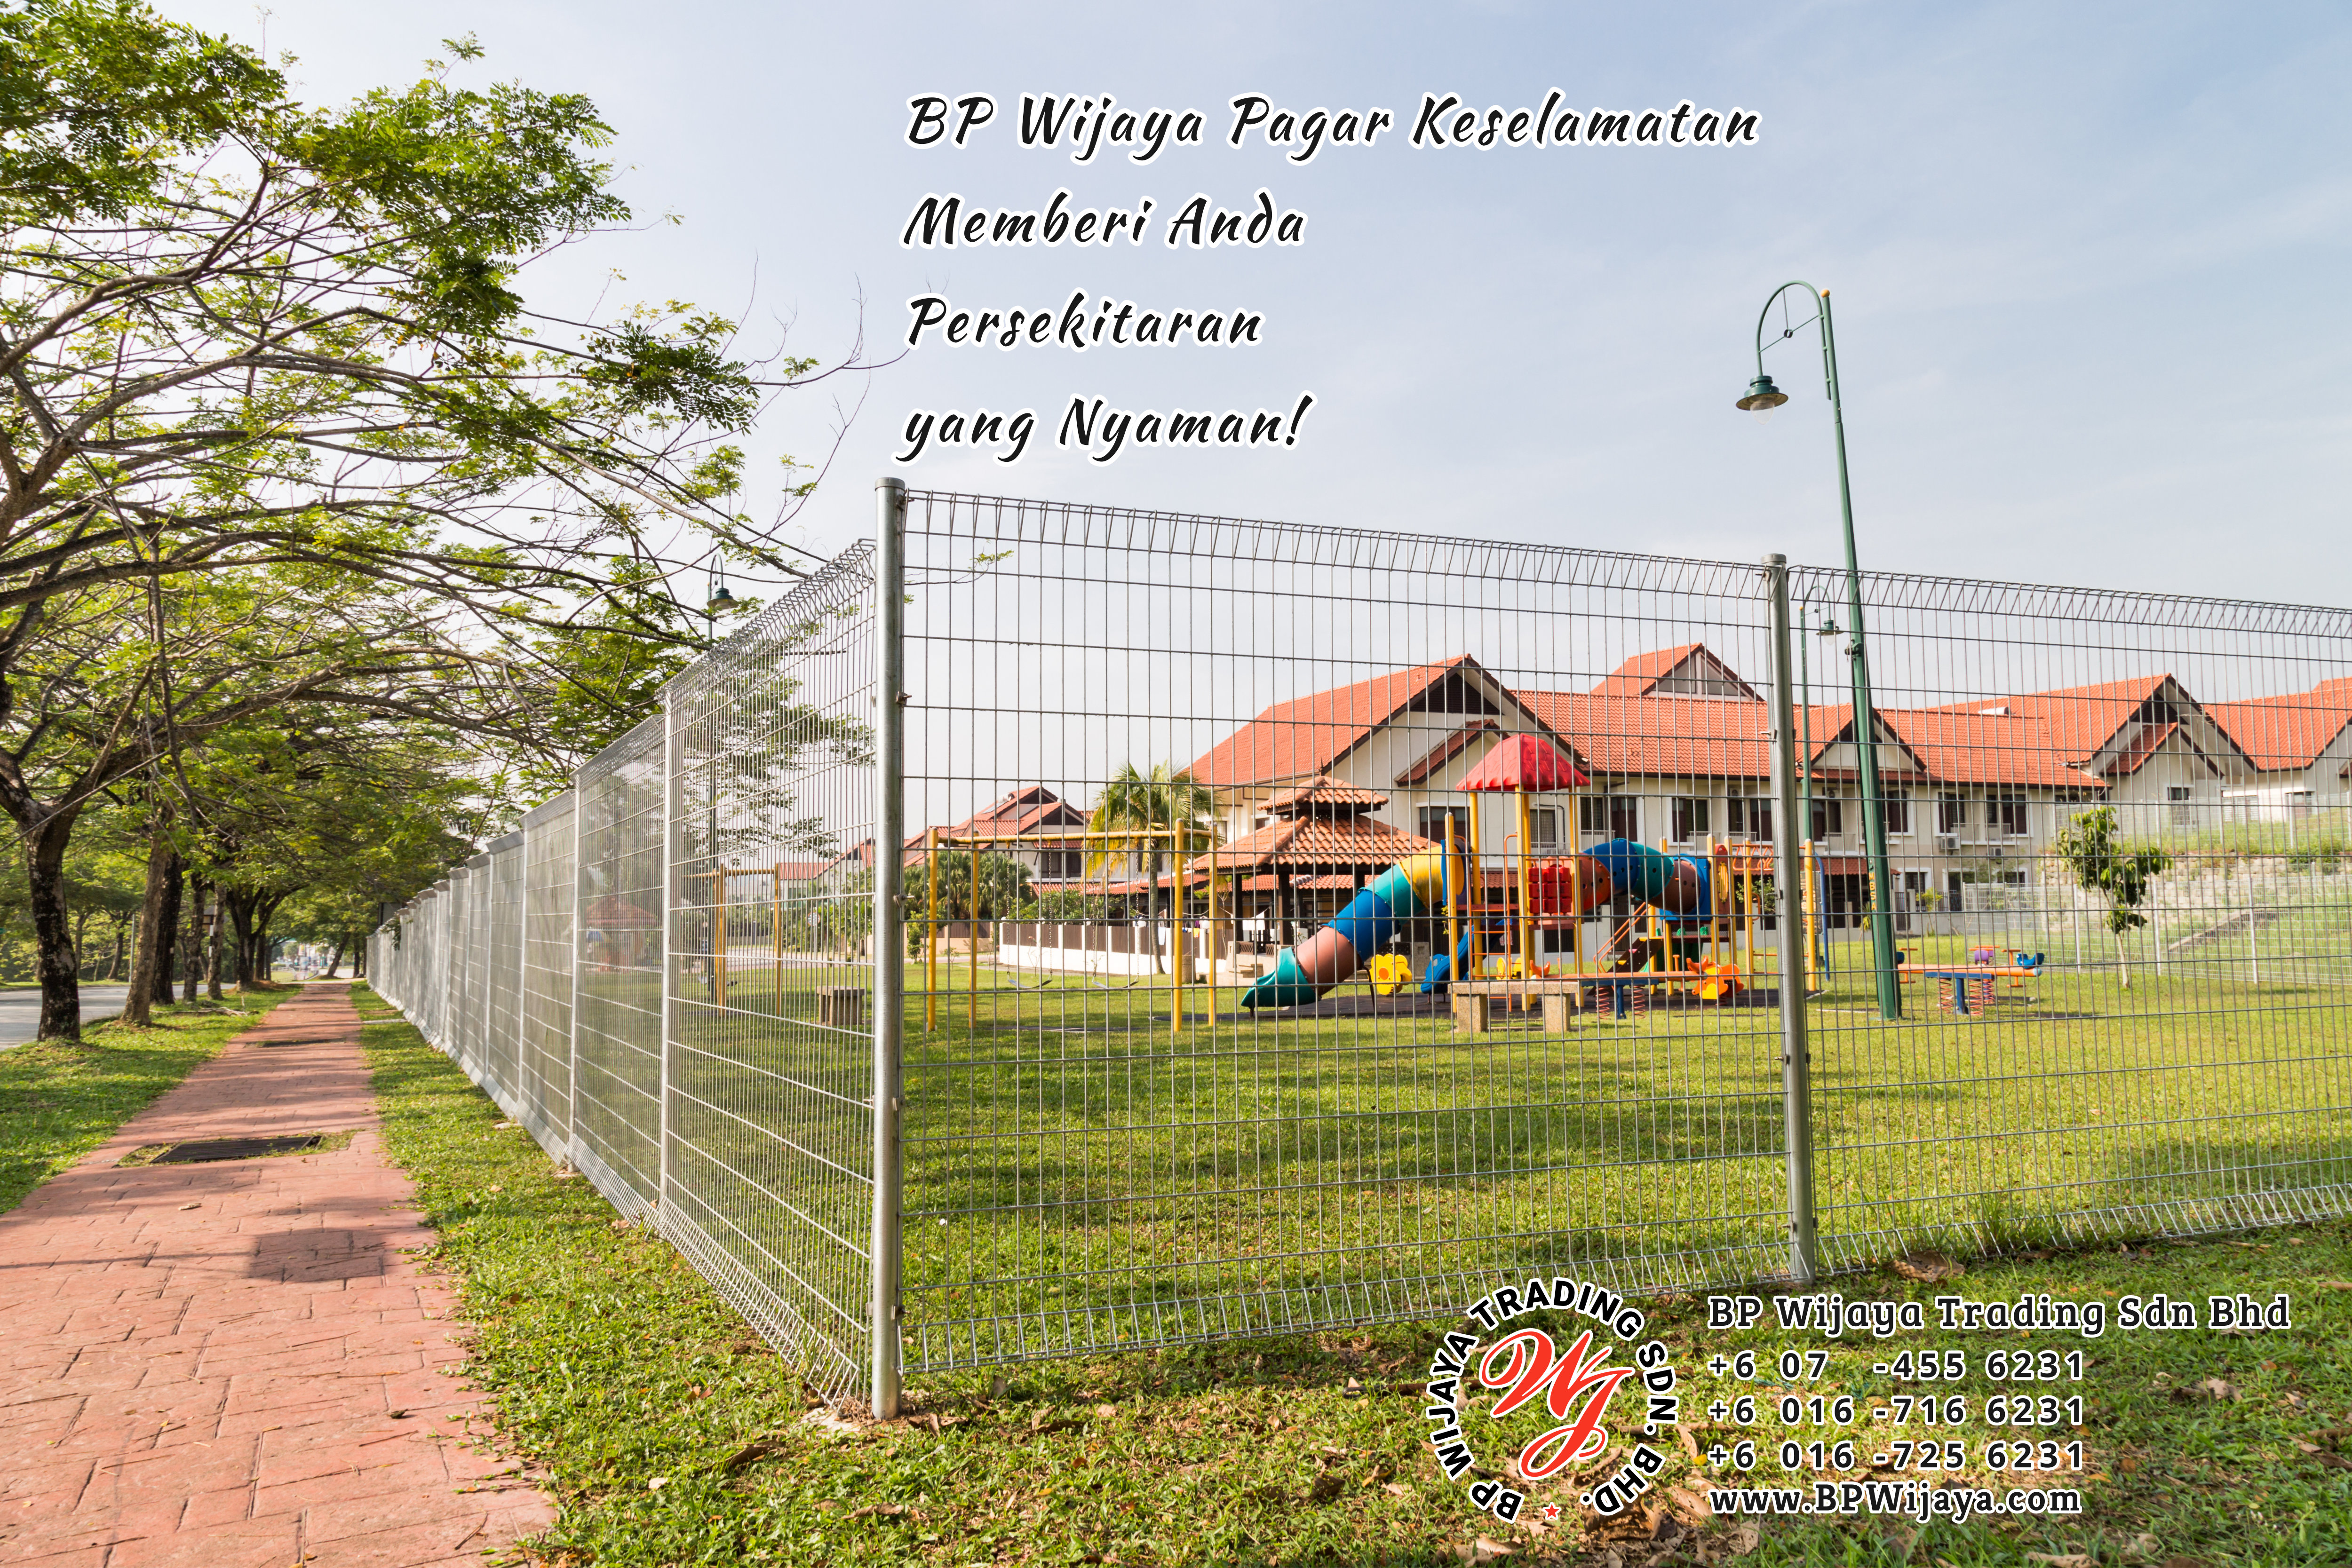 BP Wijaya Trading Sdn Bhd Malaysia Selangor Kuala Lumpur Pengeluar Pagar Keselamatan Pagar Taman Bangunan dan Kilang dan Rumah untuk Bandar Pemborong Pagar A03-13